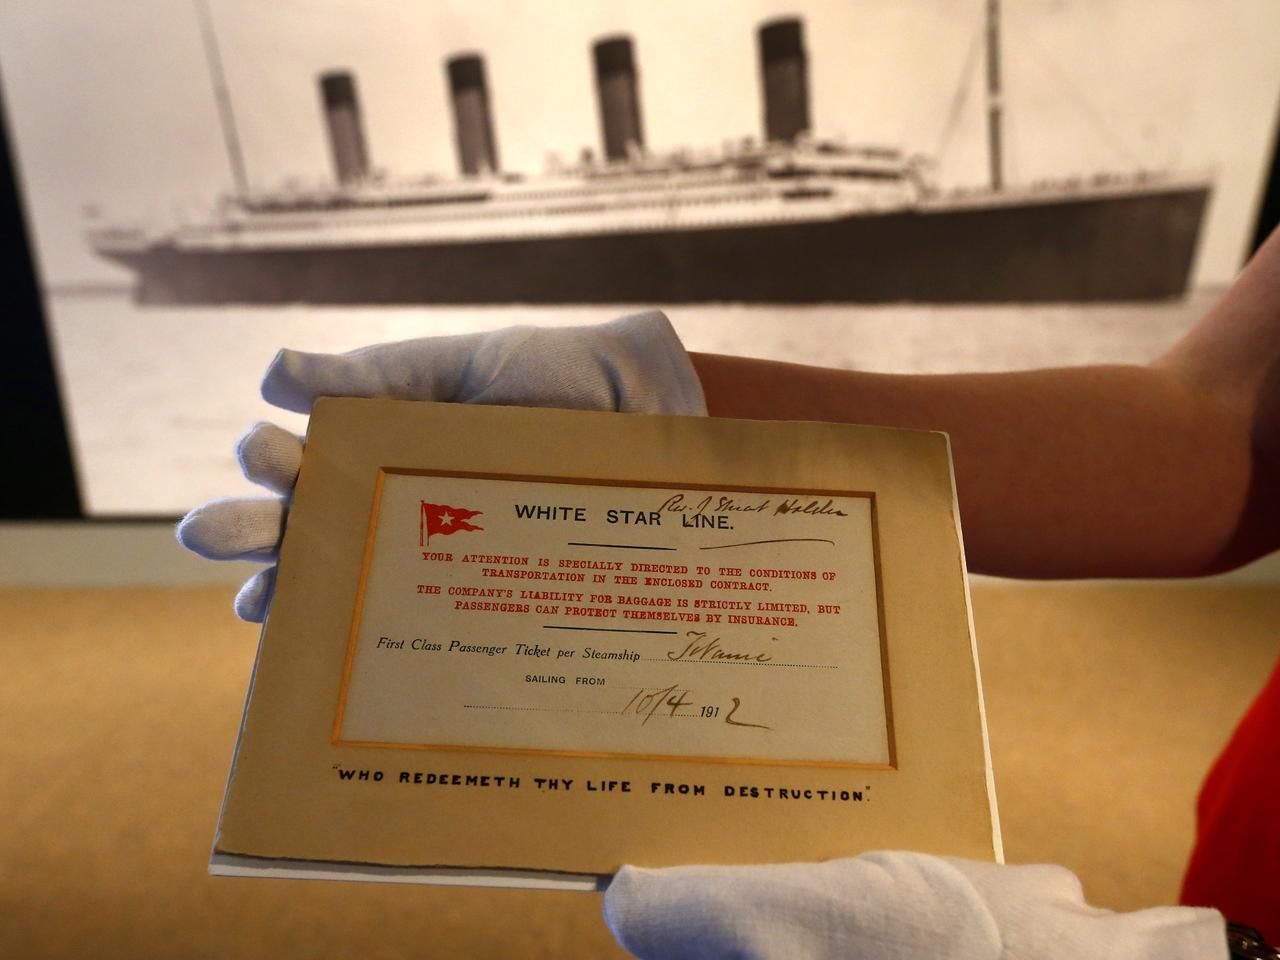 Předměty z Titanicu - výstava v muzeu v Liverpoolu